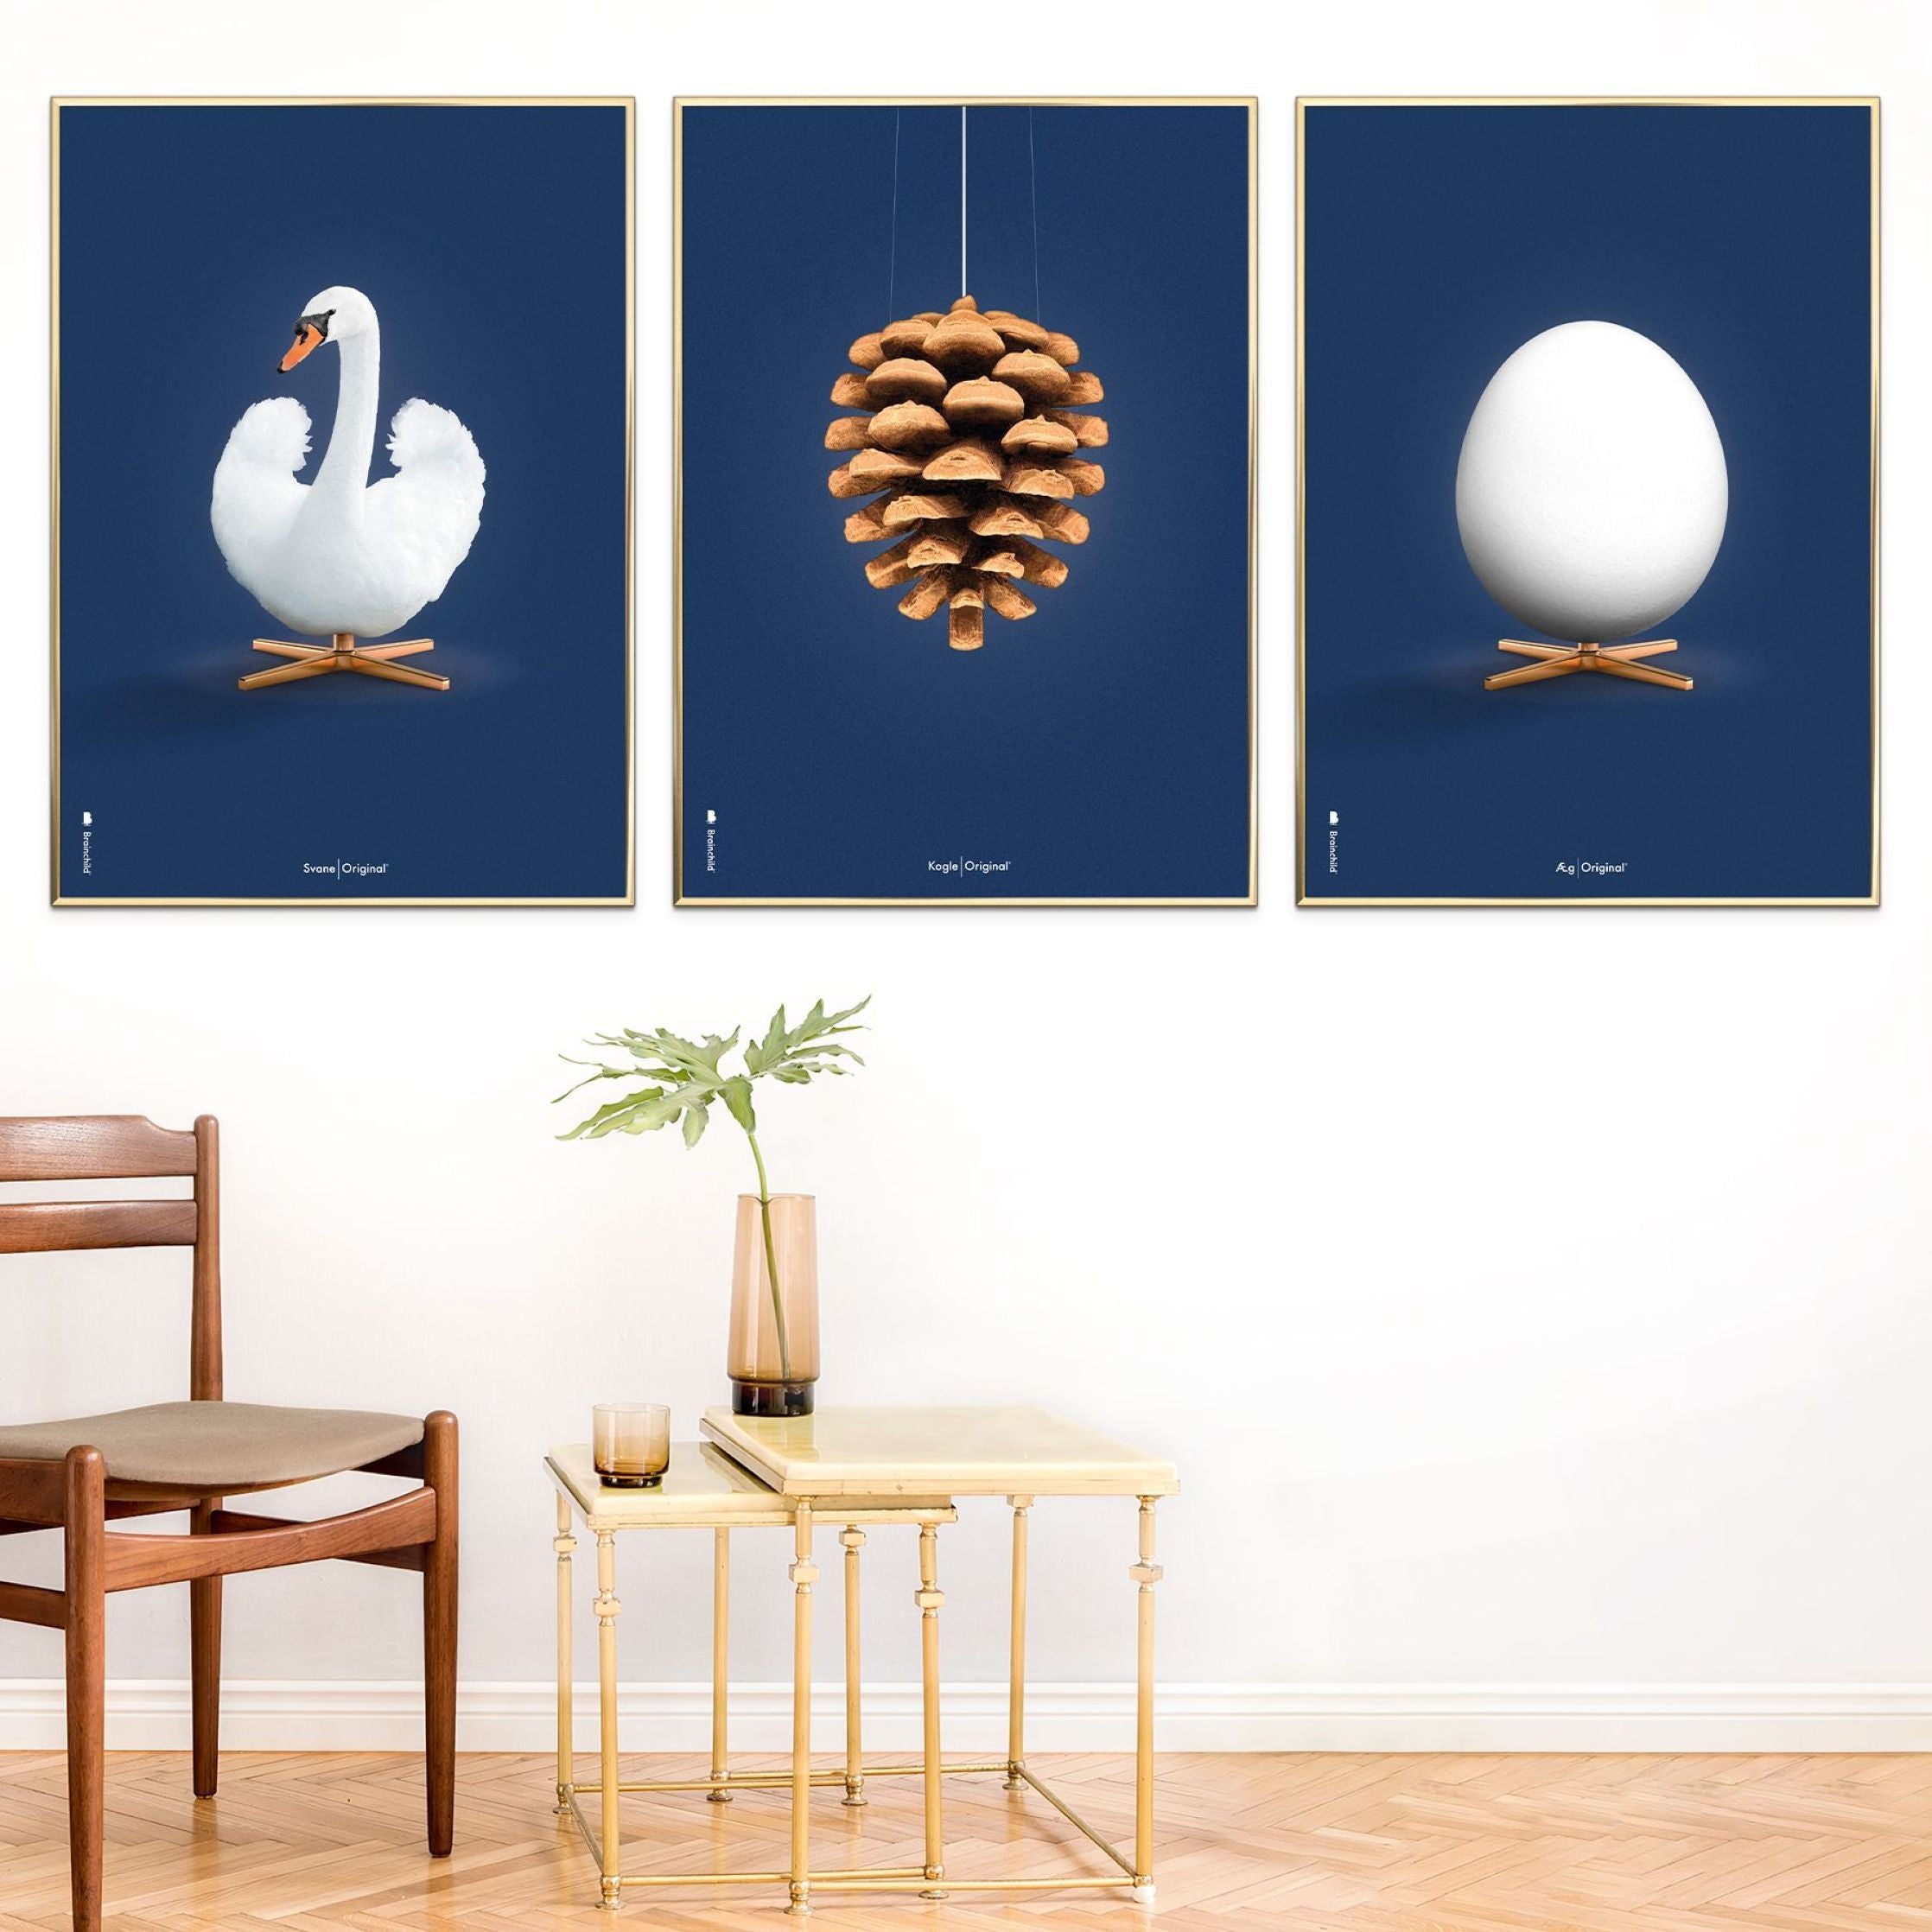 Brainchild Egg Classic Poster, Frame Made Of Light Wood 30x40 Cm, Dark Blue Background